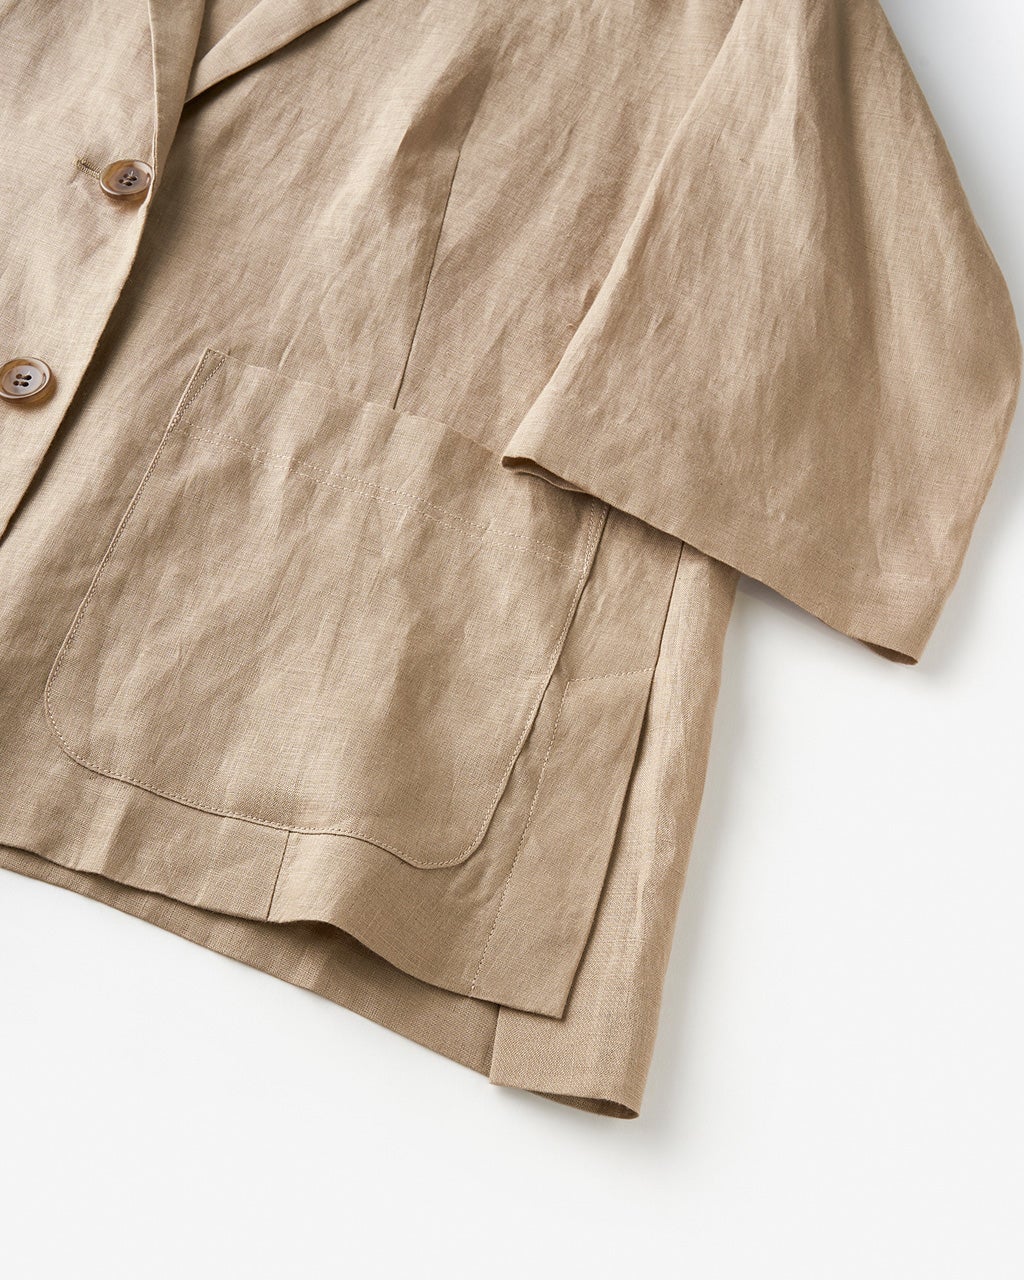 21番リネン・シャツジャケット/40代50代からのレディース・メンズ